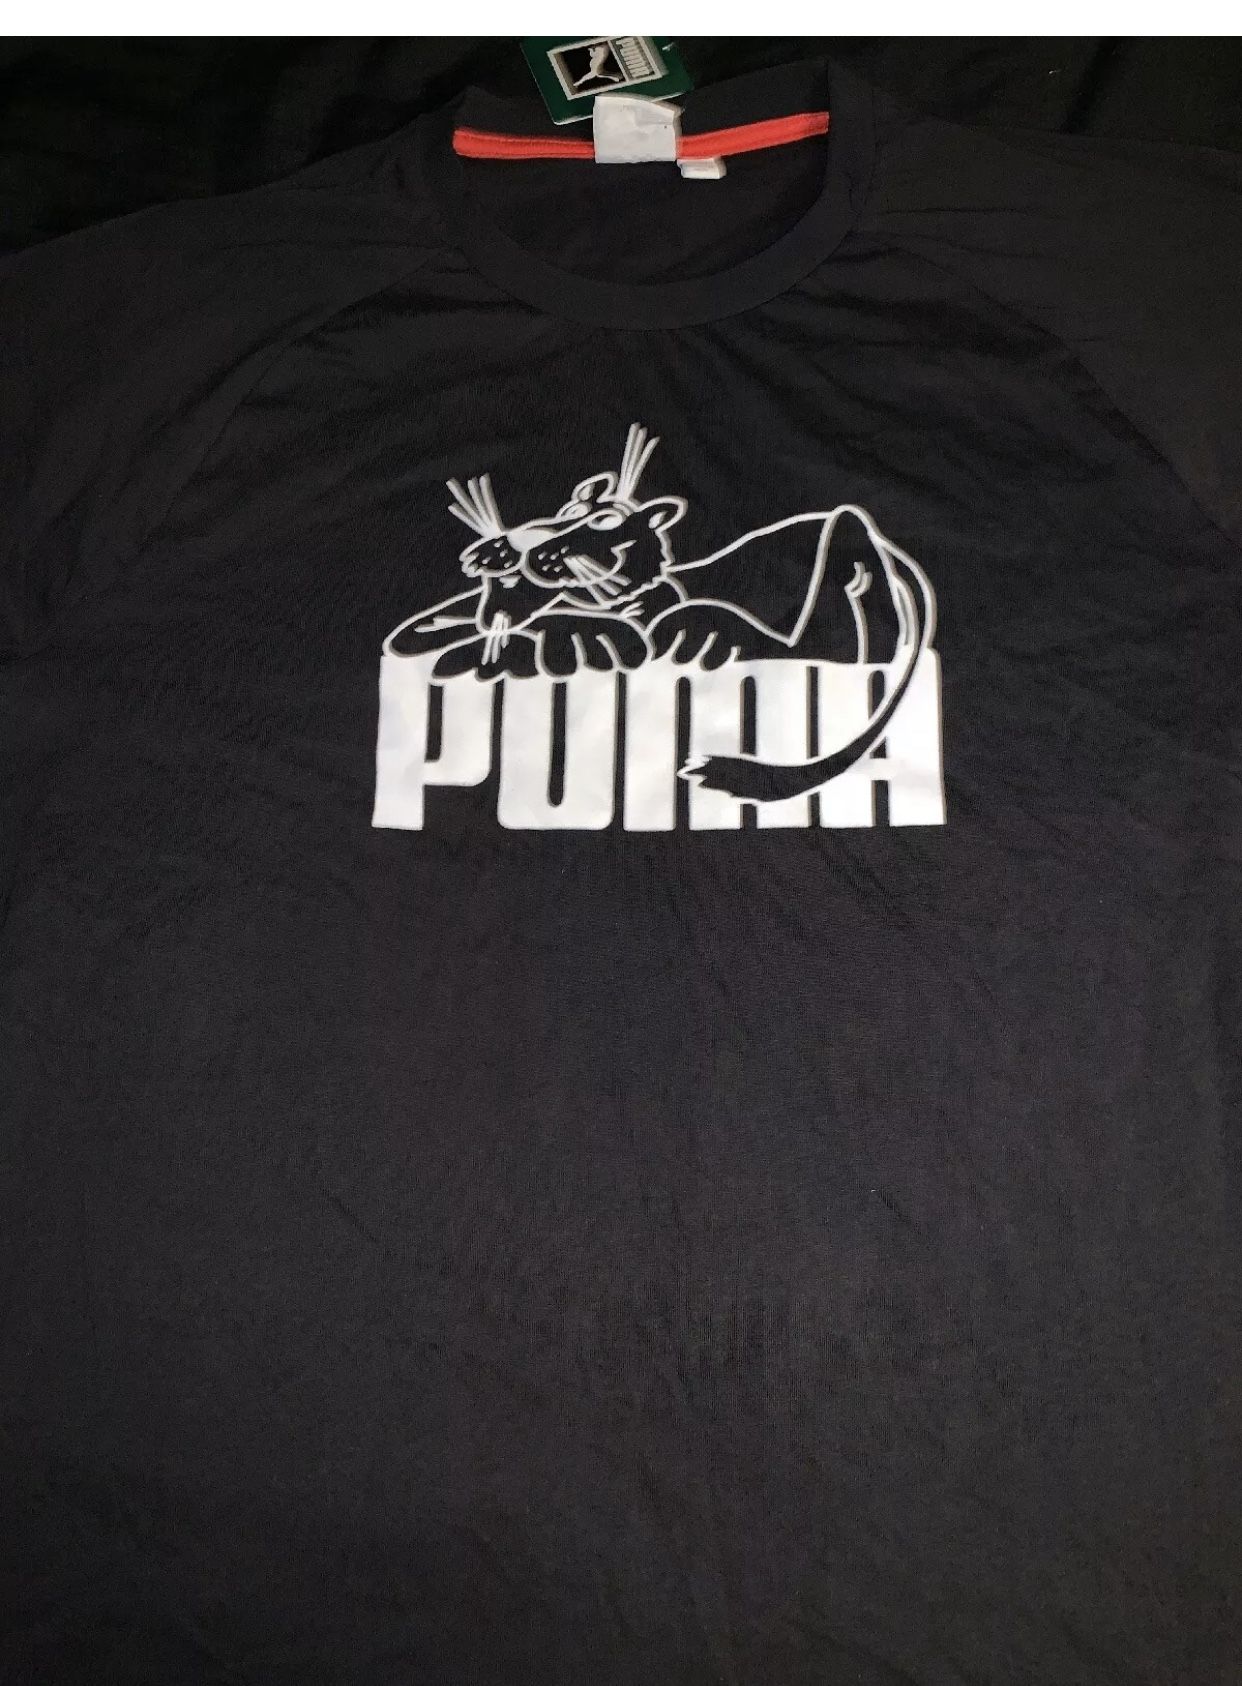 Puma Men's Super Tee 808 Cool Cat Graphic Print T-Shirt Sz L